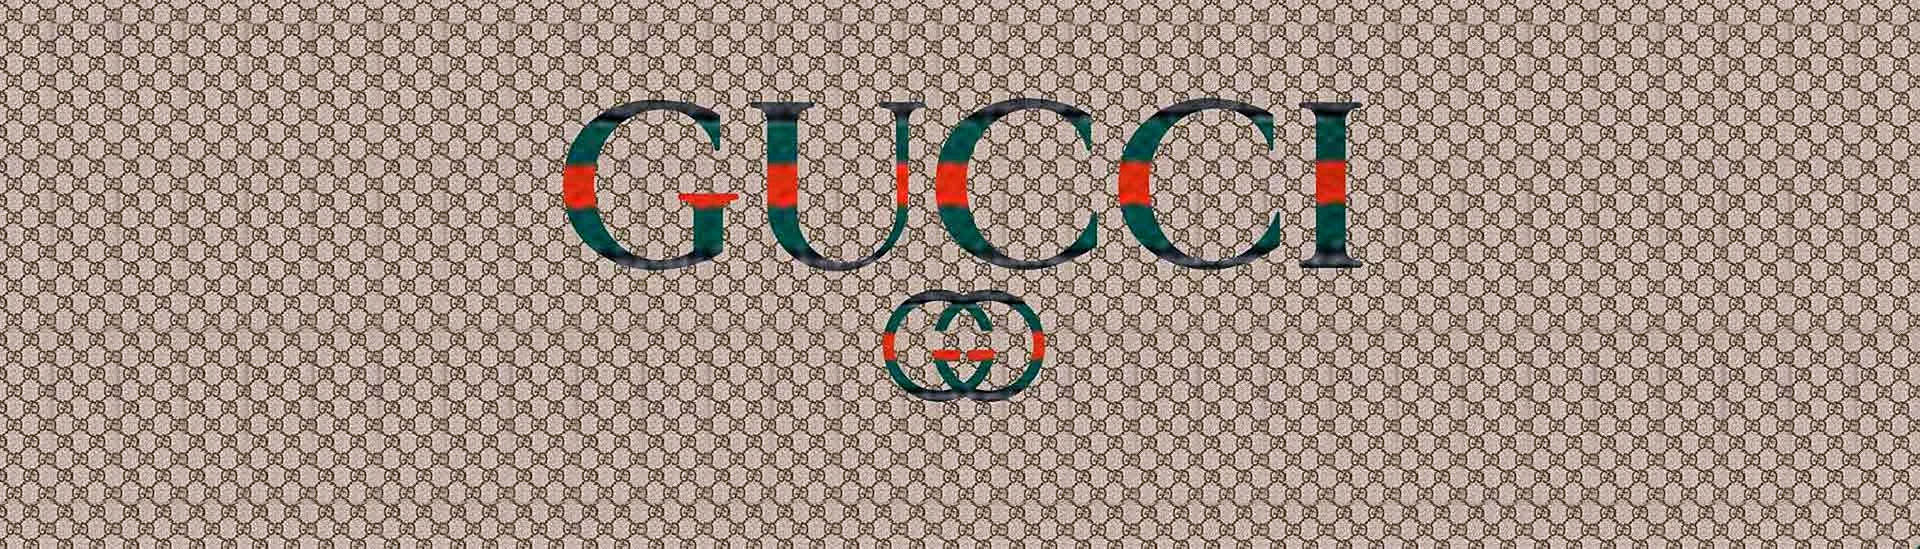 Gucci Brand Wallpaper